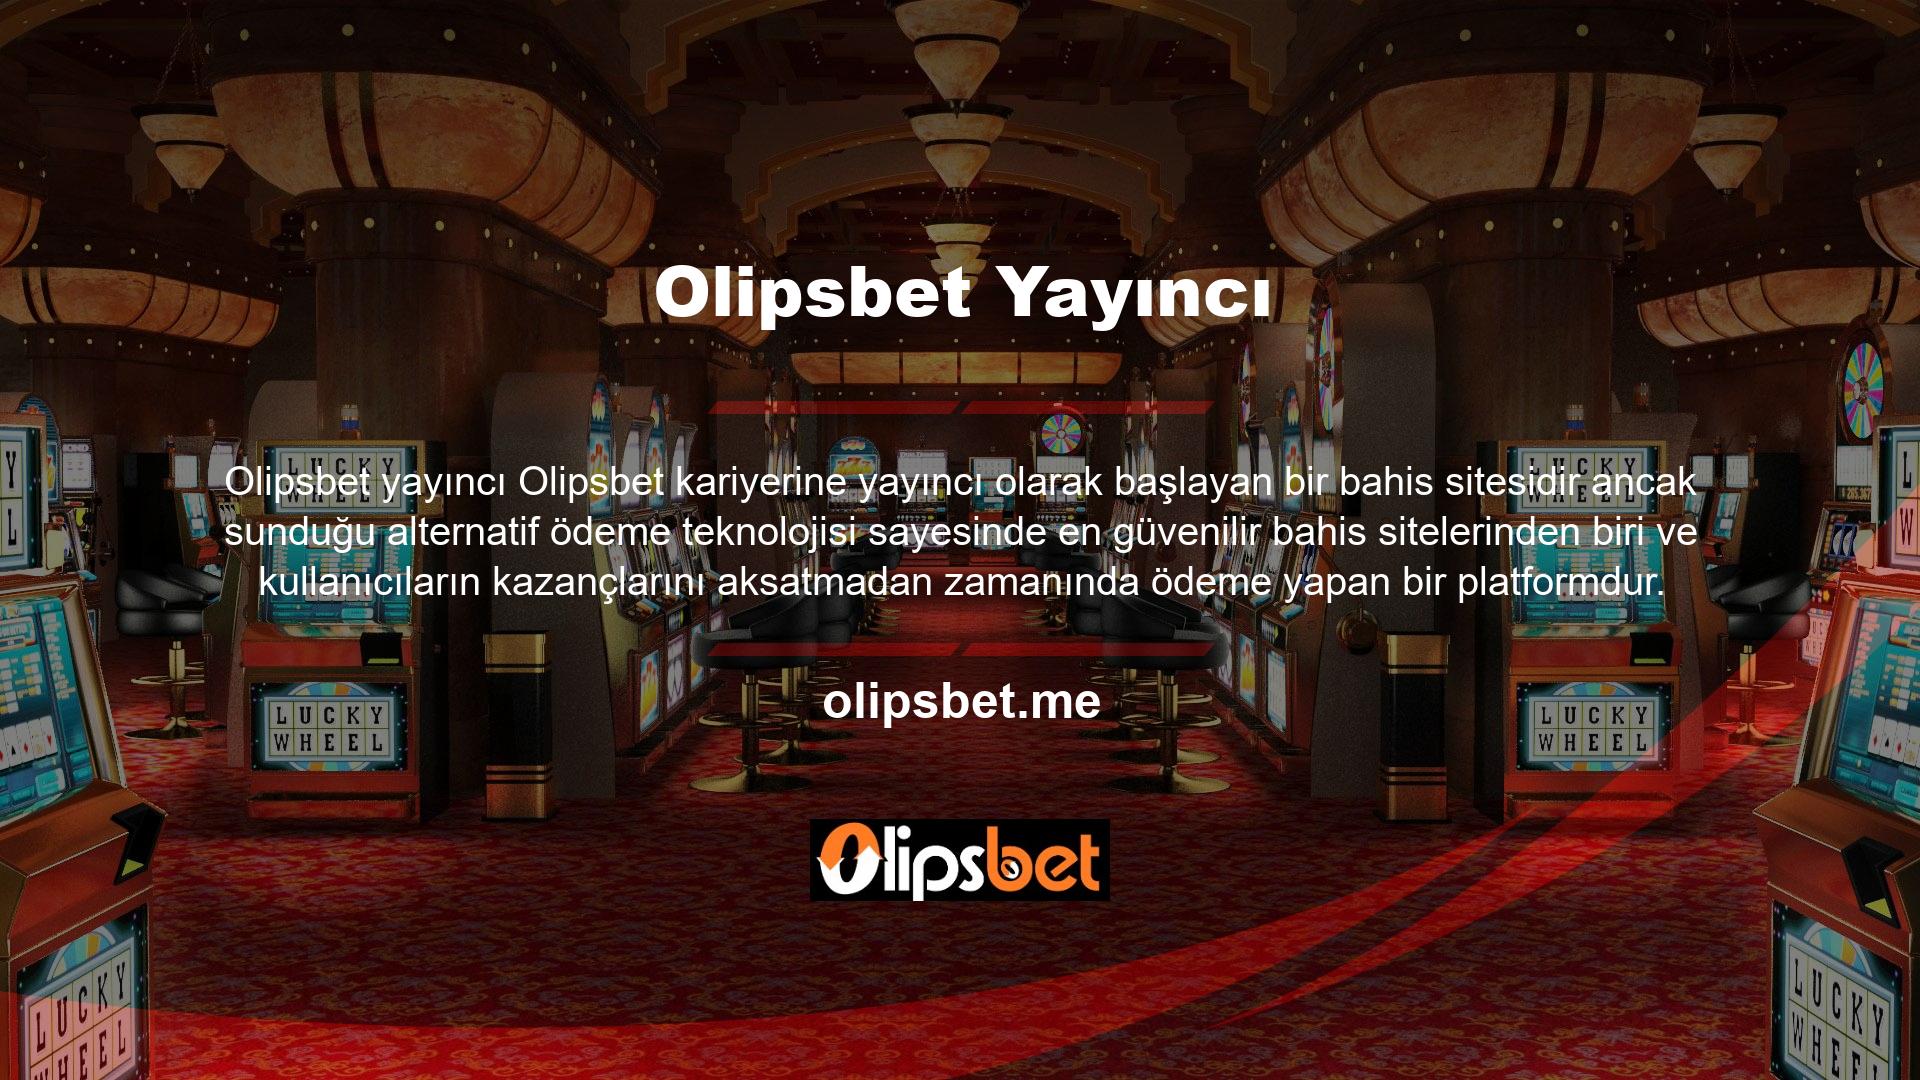 Her ne kadar bazı kullanıcılar Olipsbet web sitesinin güvenilirliğini sorgulasa da Olipsbet web sitesinin müşteri memnuniyetini ön planda tutan, kolay ödeme seçenekleri sunan güvenilir bir bahis sitesi olduğunu söylemek yanlış olmaz